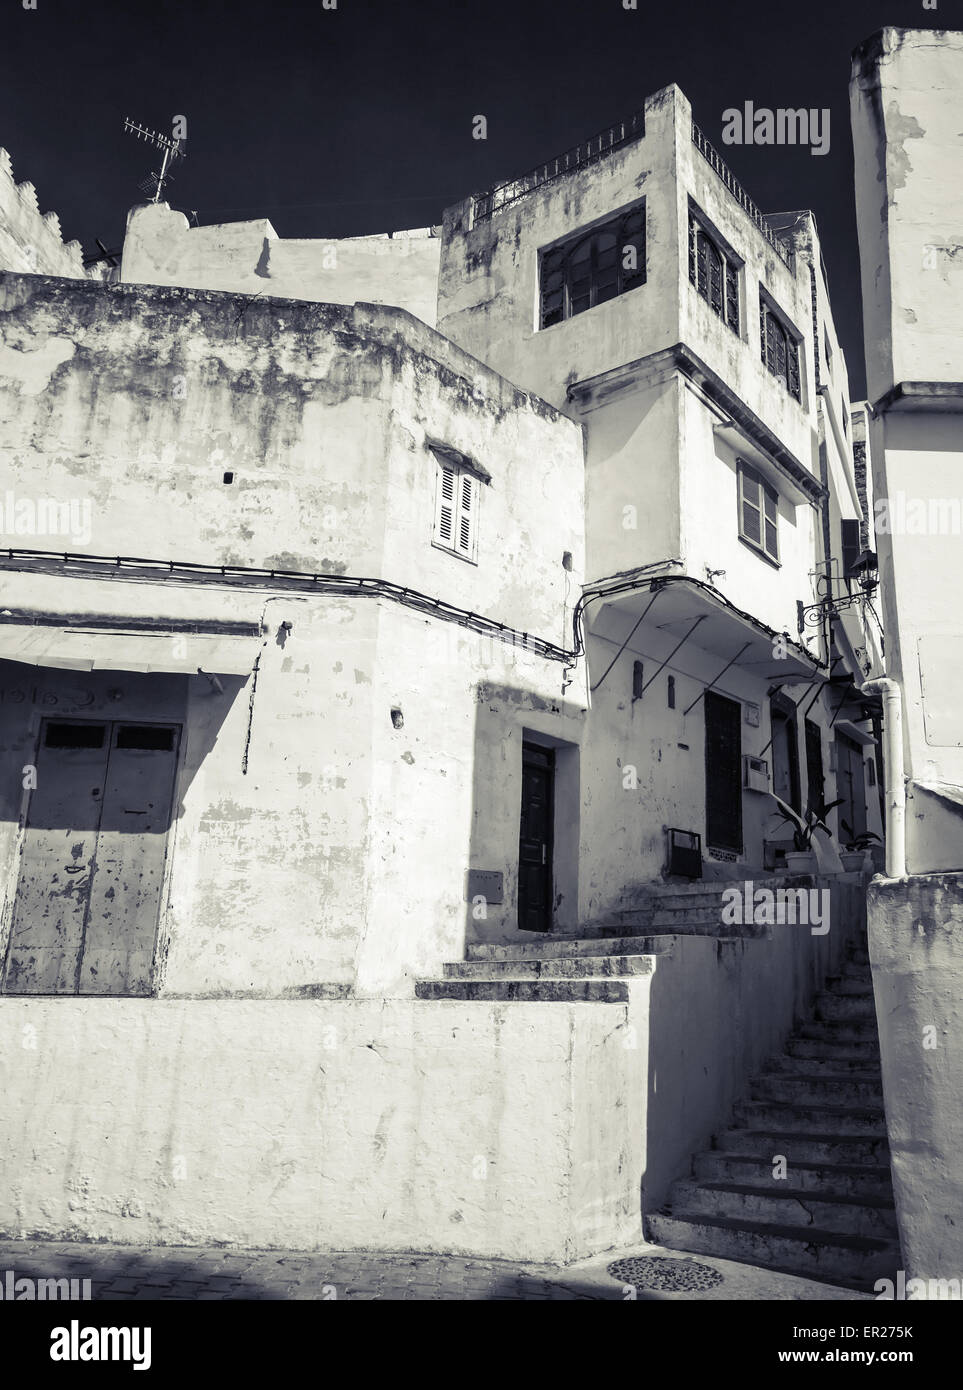 Gässchen Sie Arabisch, alte Medina von Tanger, Marokko. Monochrome hi contrast Filter-Effekt Stockfoto